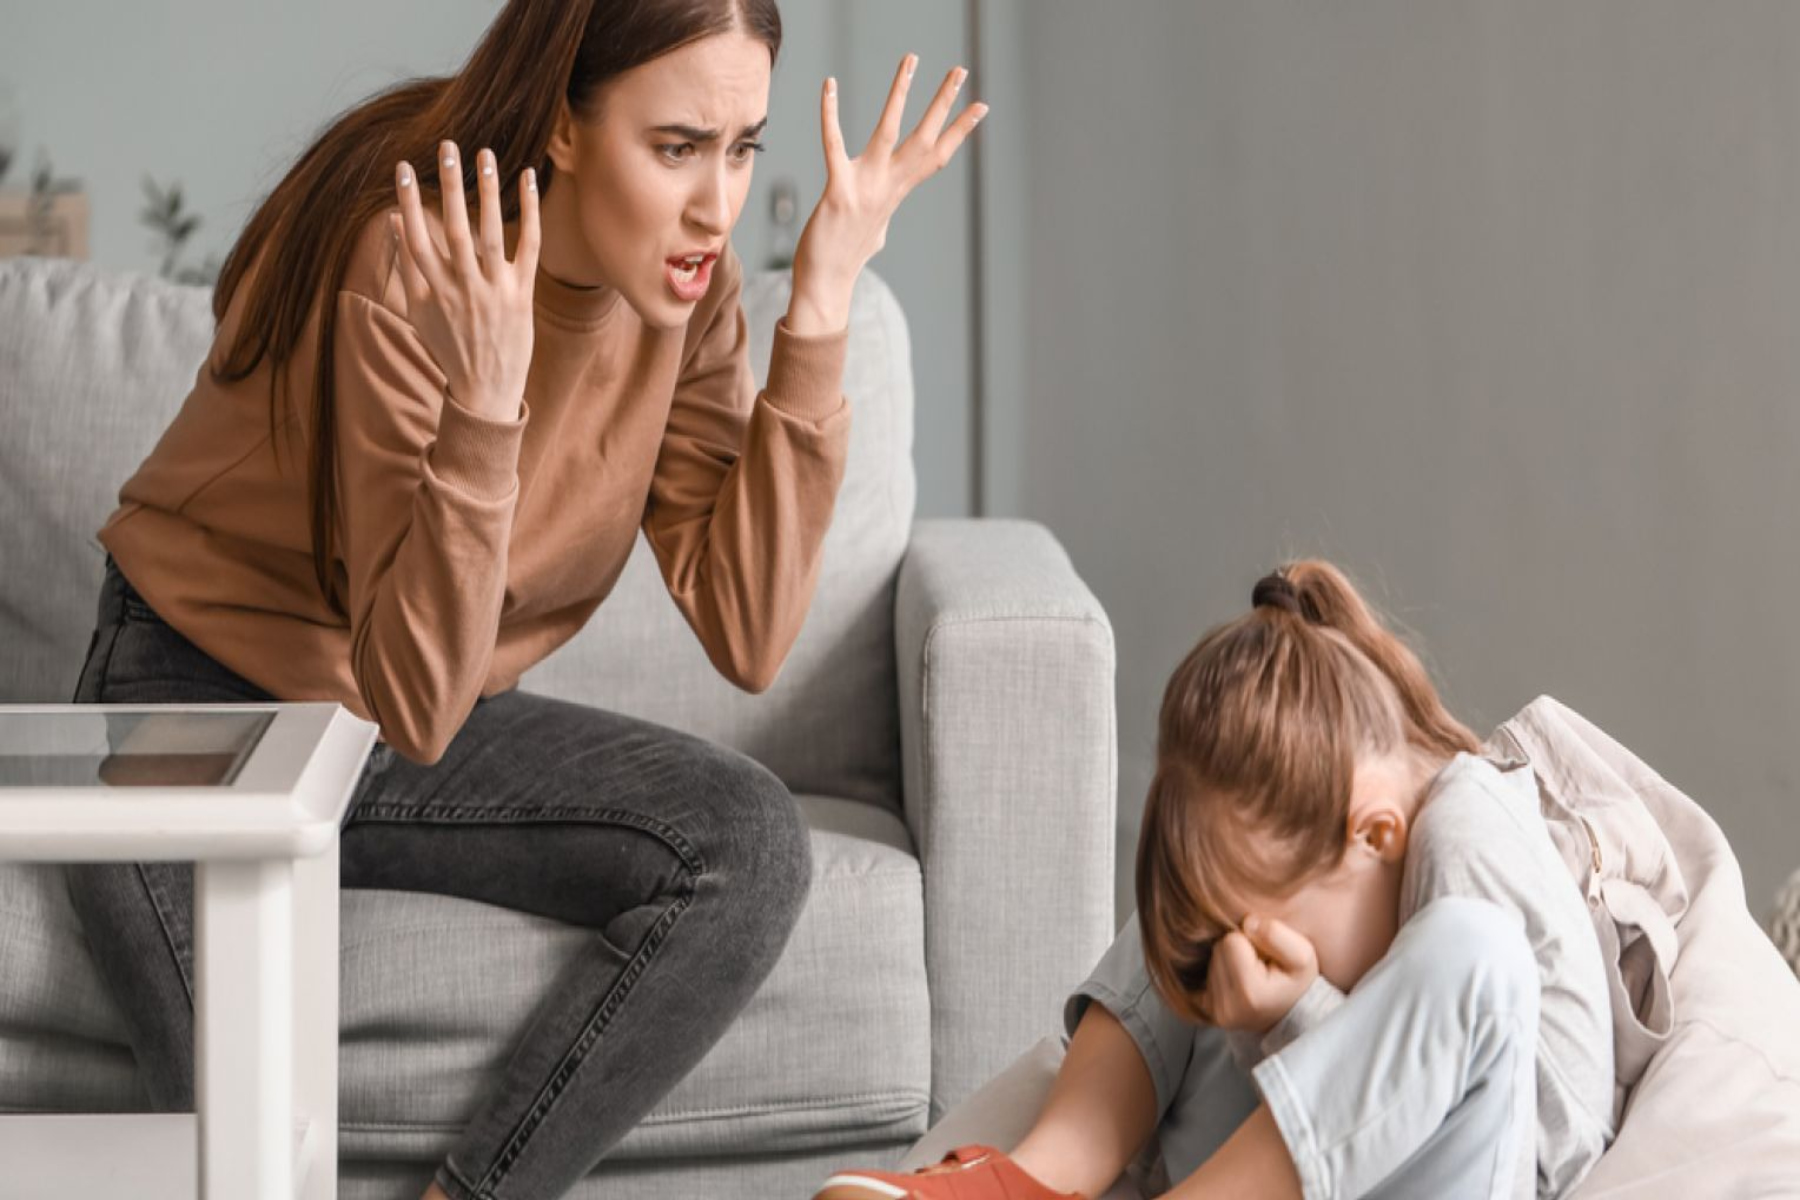 Ψυχολογία: Οι μητέρες με διαταραχές προσωπικότητας επηρεάζουν τη συμπεριφορά των παιδιών τους